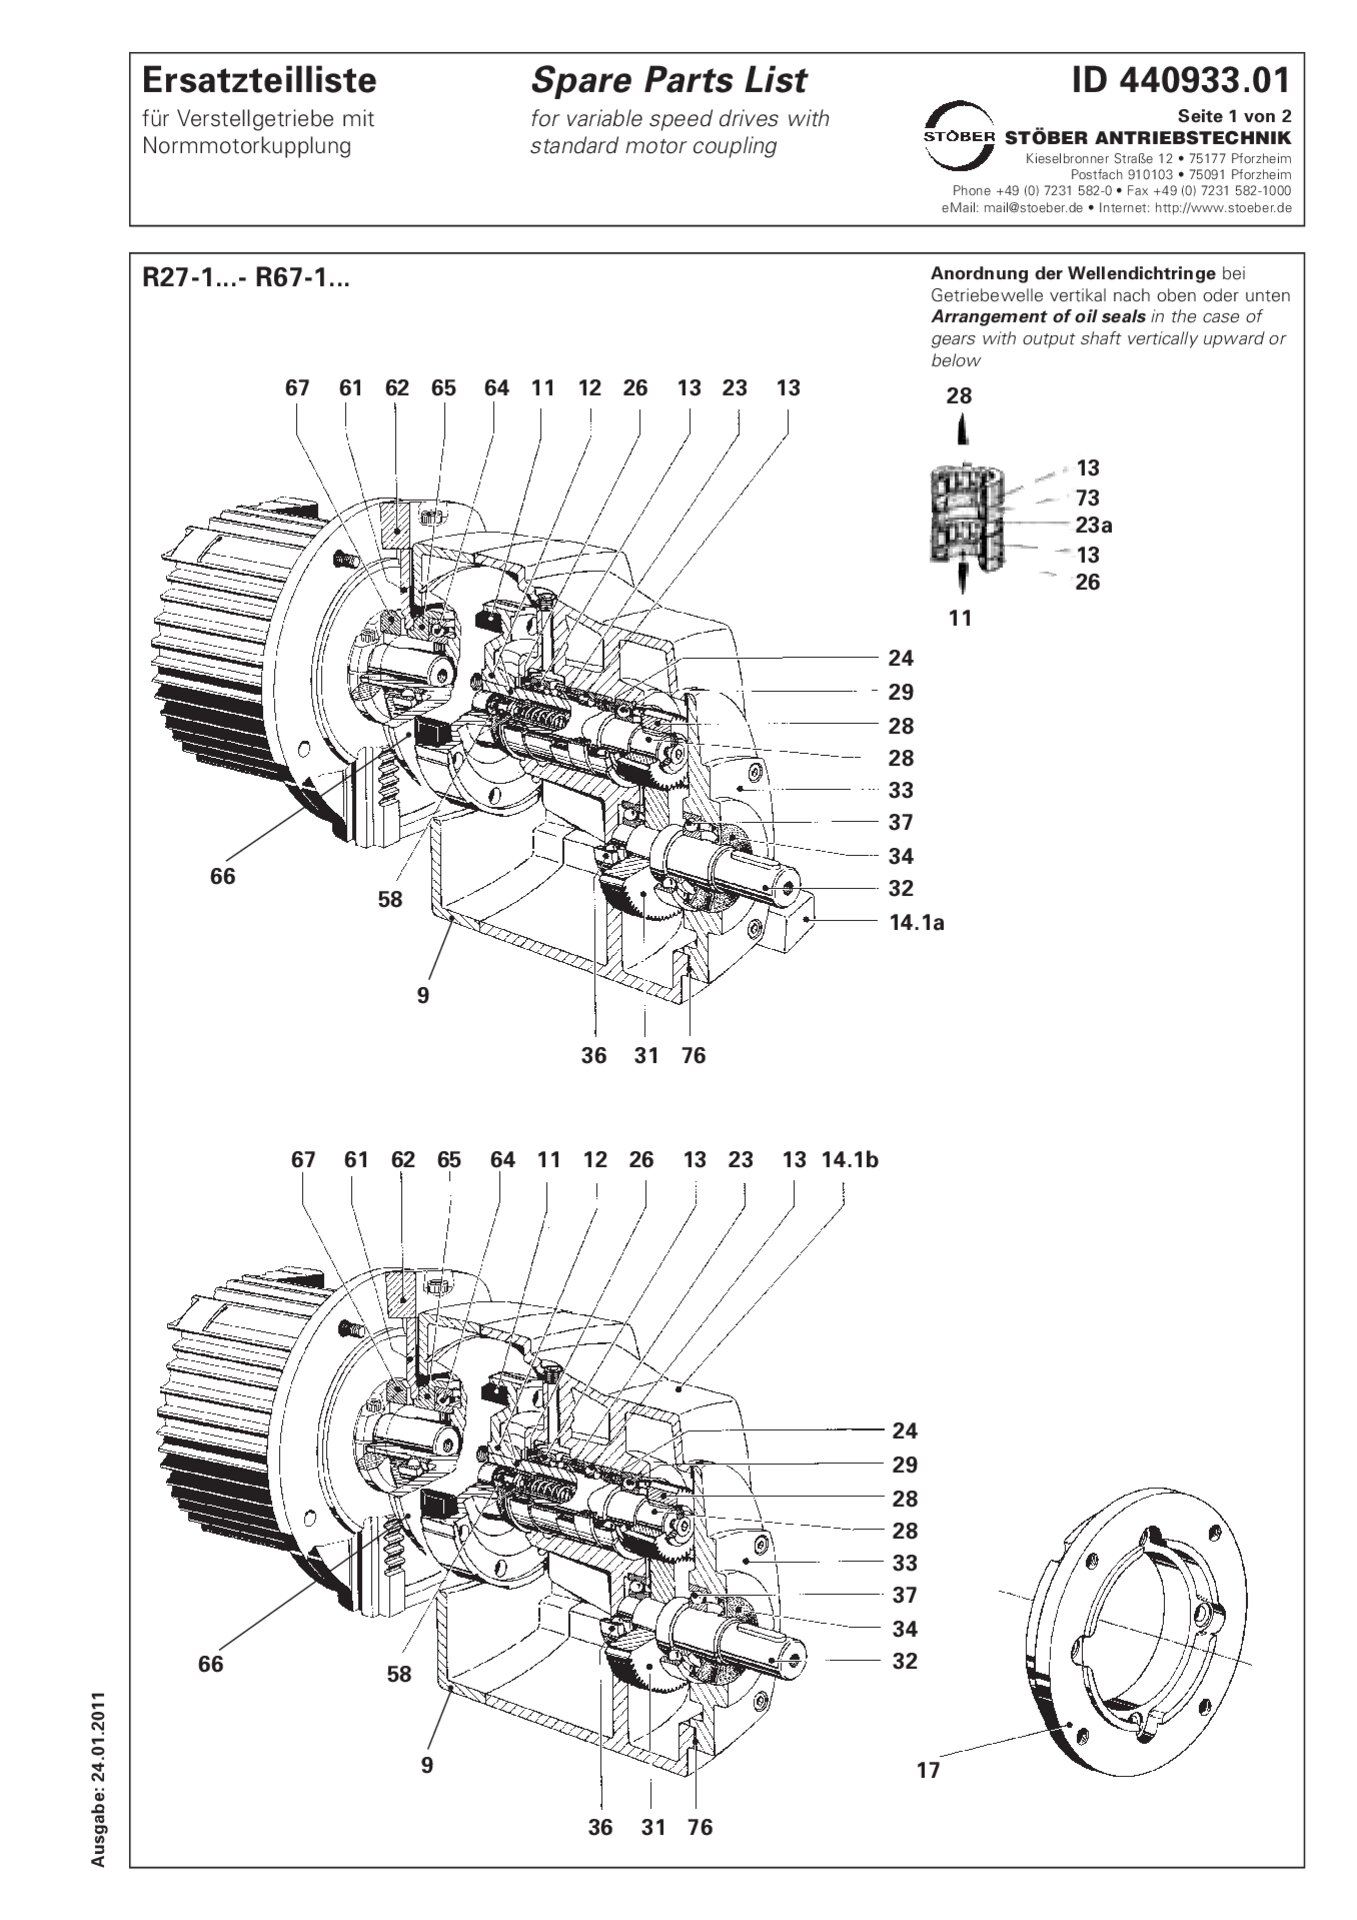 Spare parts list R27-1/R37-1/R47-1/R57-1/R67-1 with standard motor couplingErsatzteilliste R27-1/R37-1/R47-1/R57-1/R67-1 mit Normmotorkupplung